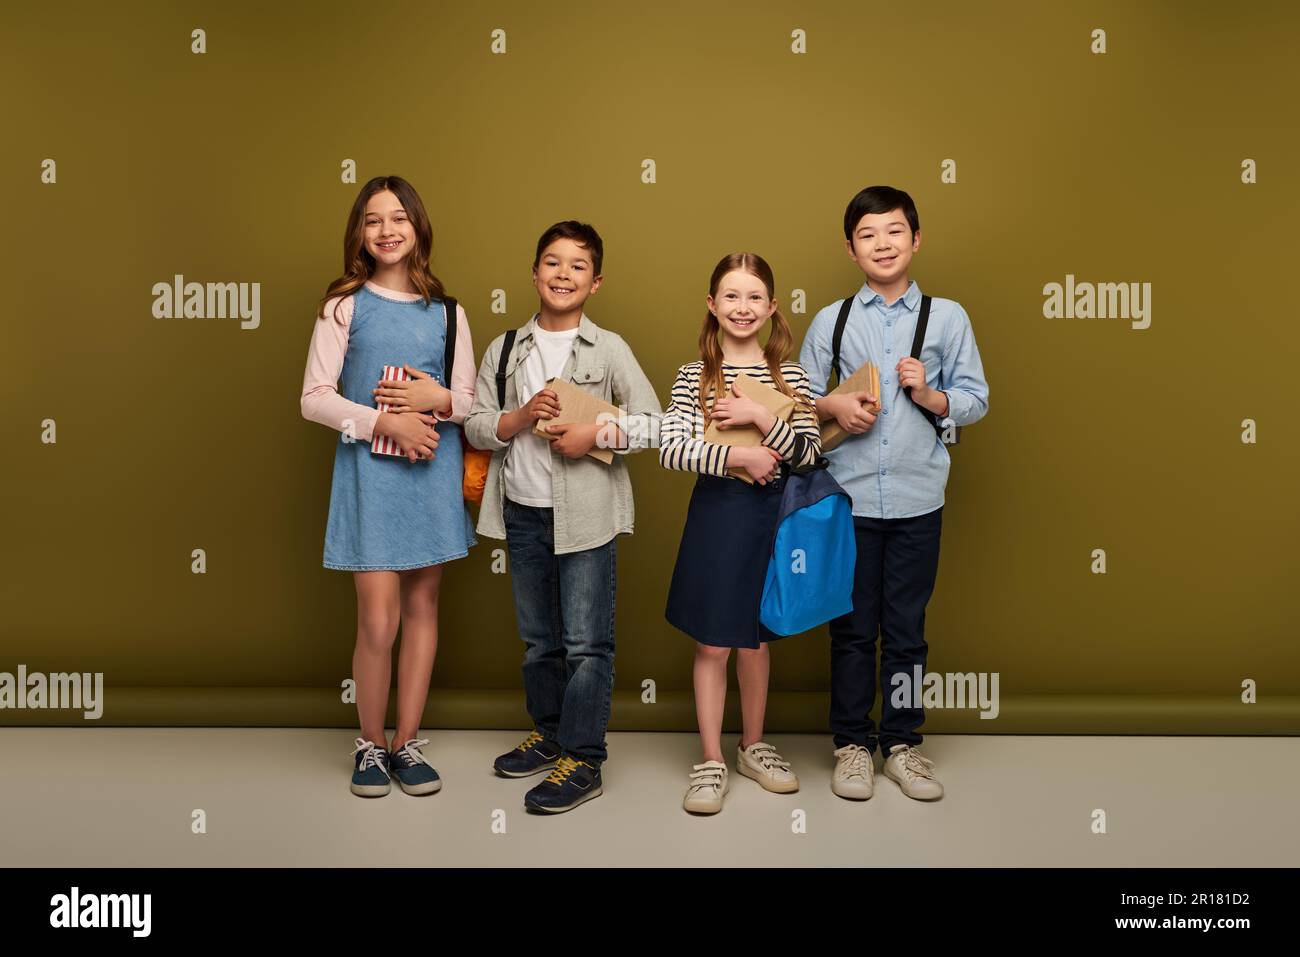 Die ganze Länge voller fröhlicher multiethnischer Kinder in legerer Kleidung mit Rucksäcken und Büchern auf Khaki-Hintergrund, Happy Children's Day Konzept Stockfoto